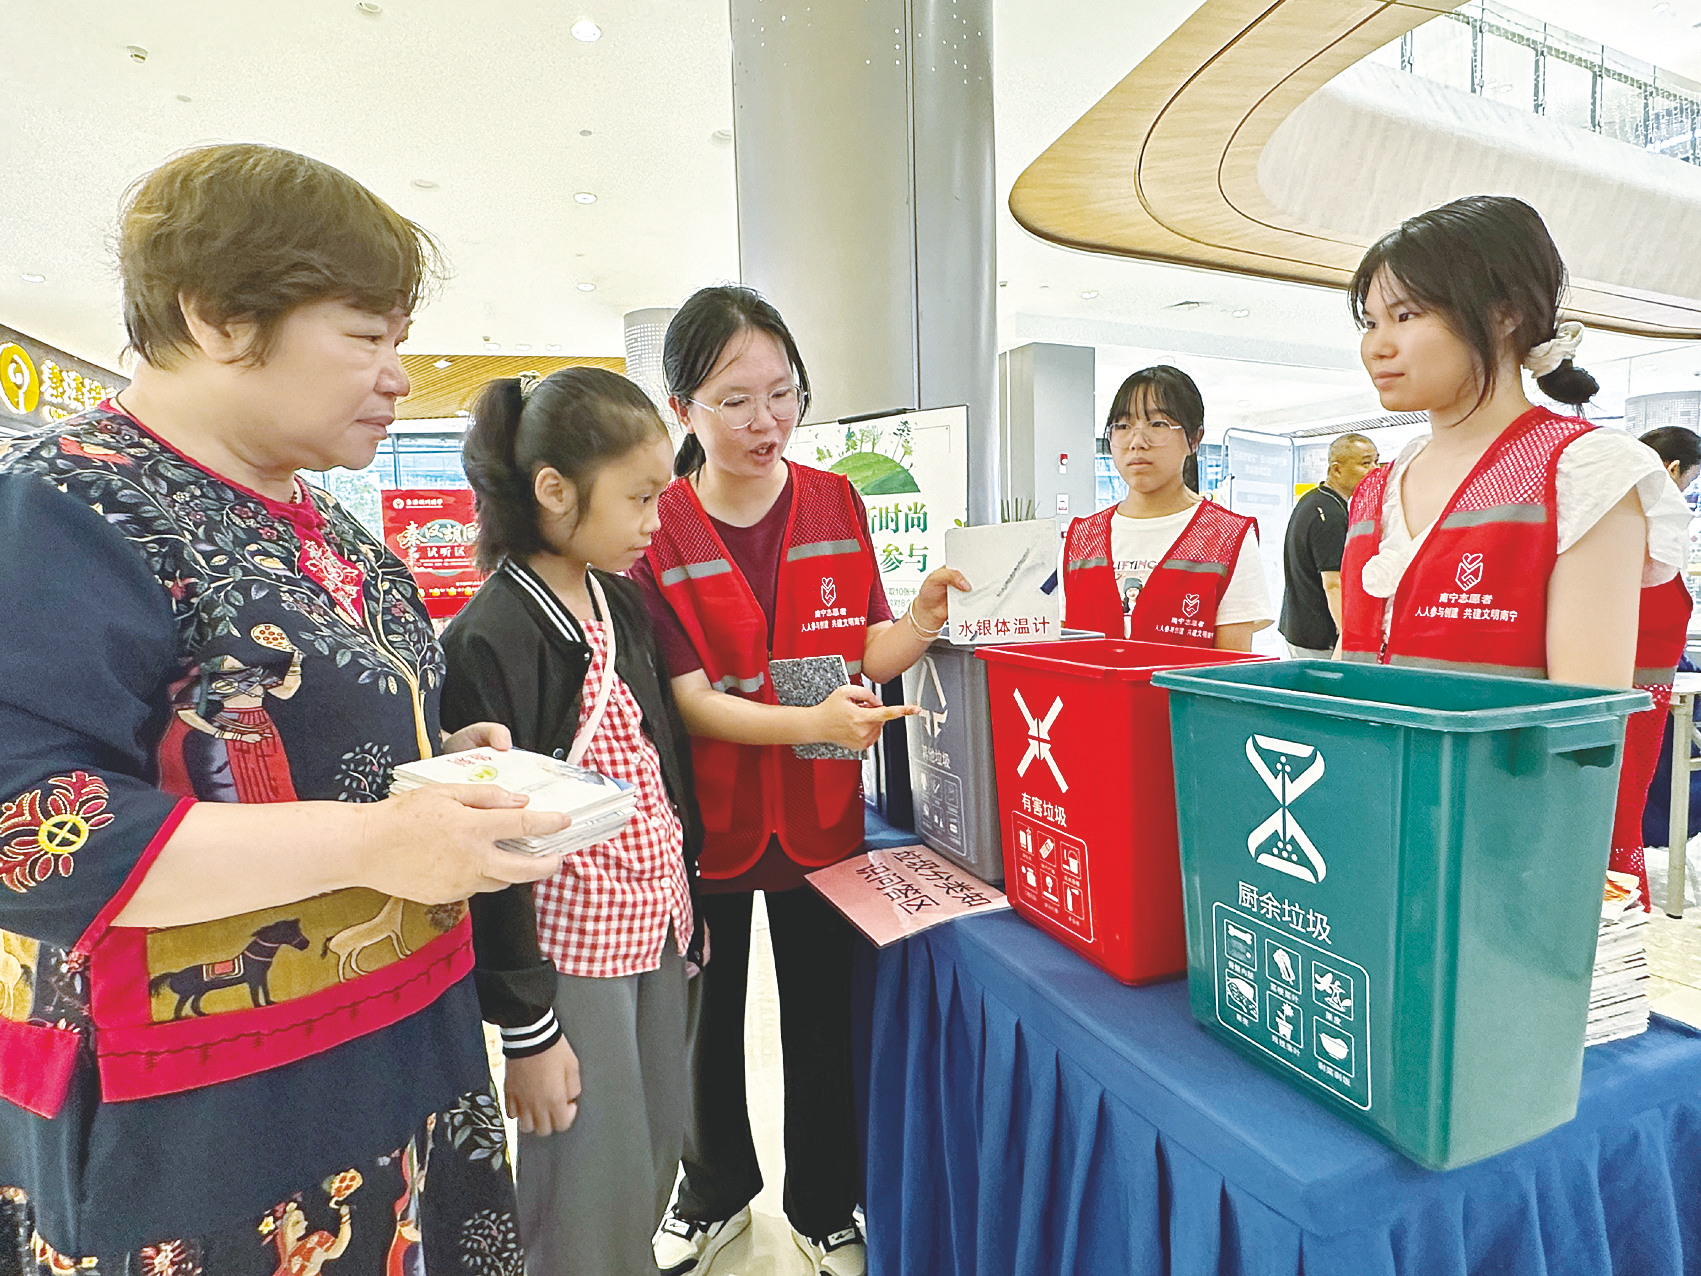     环保志愿者向市民讲解生活垃圾分类知识。    本报记者杨盛 摄